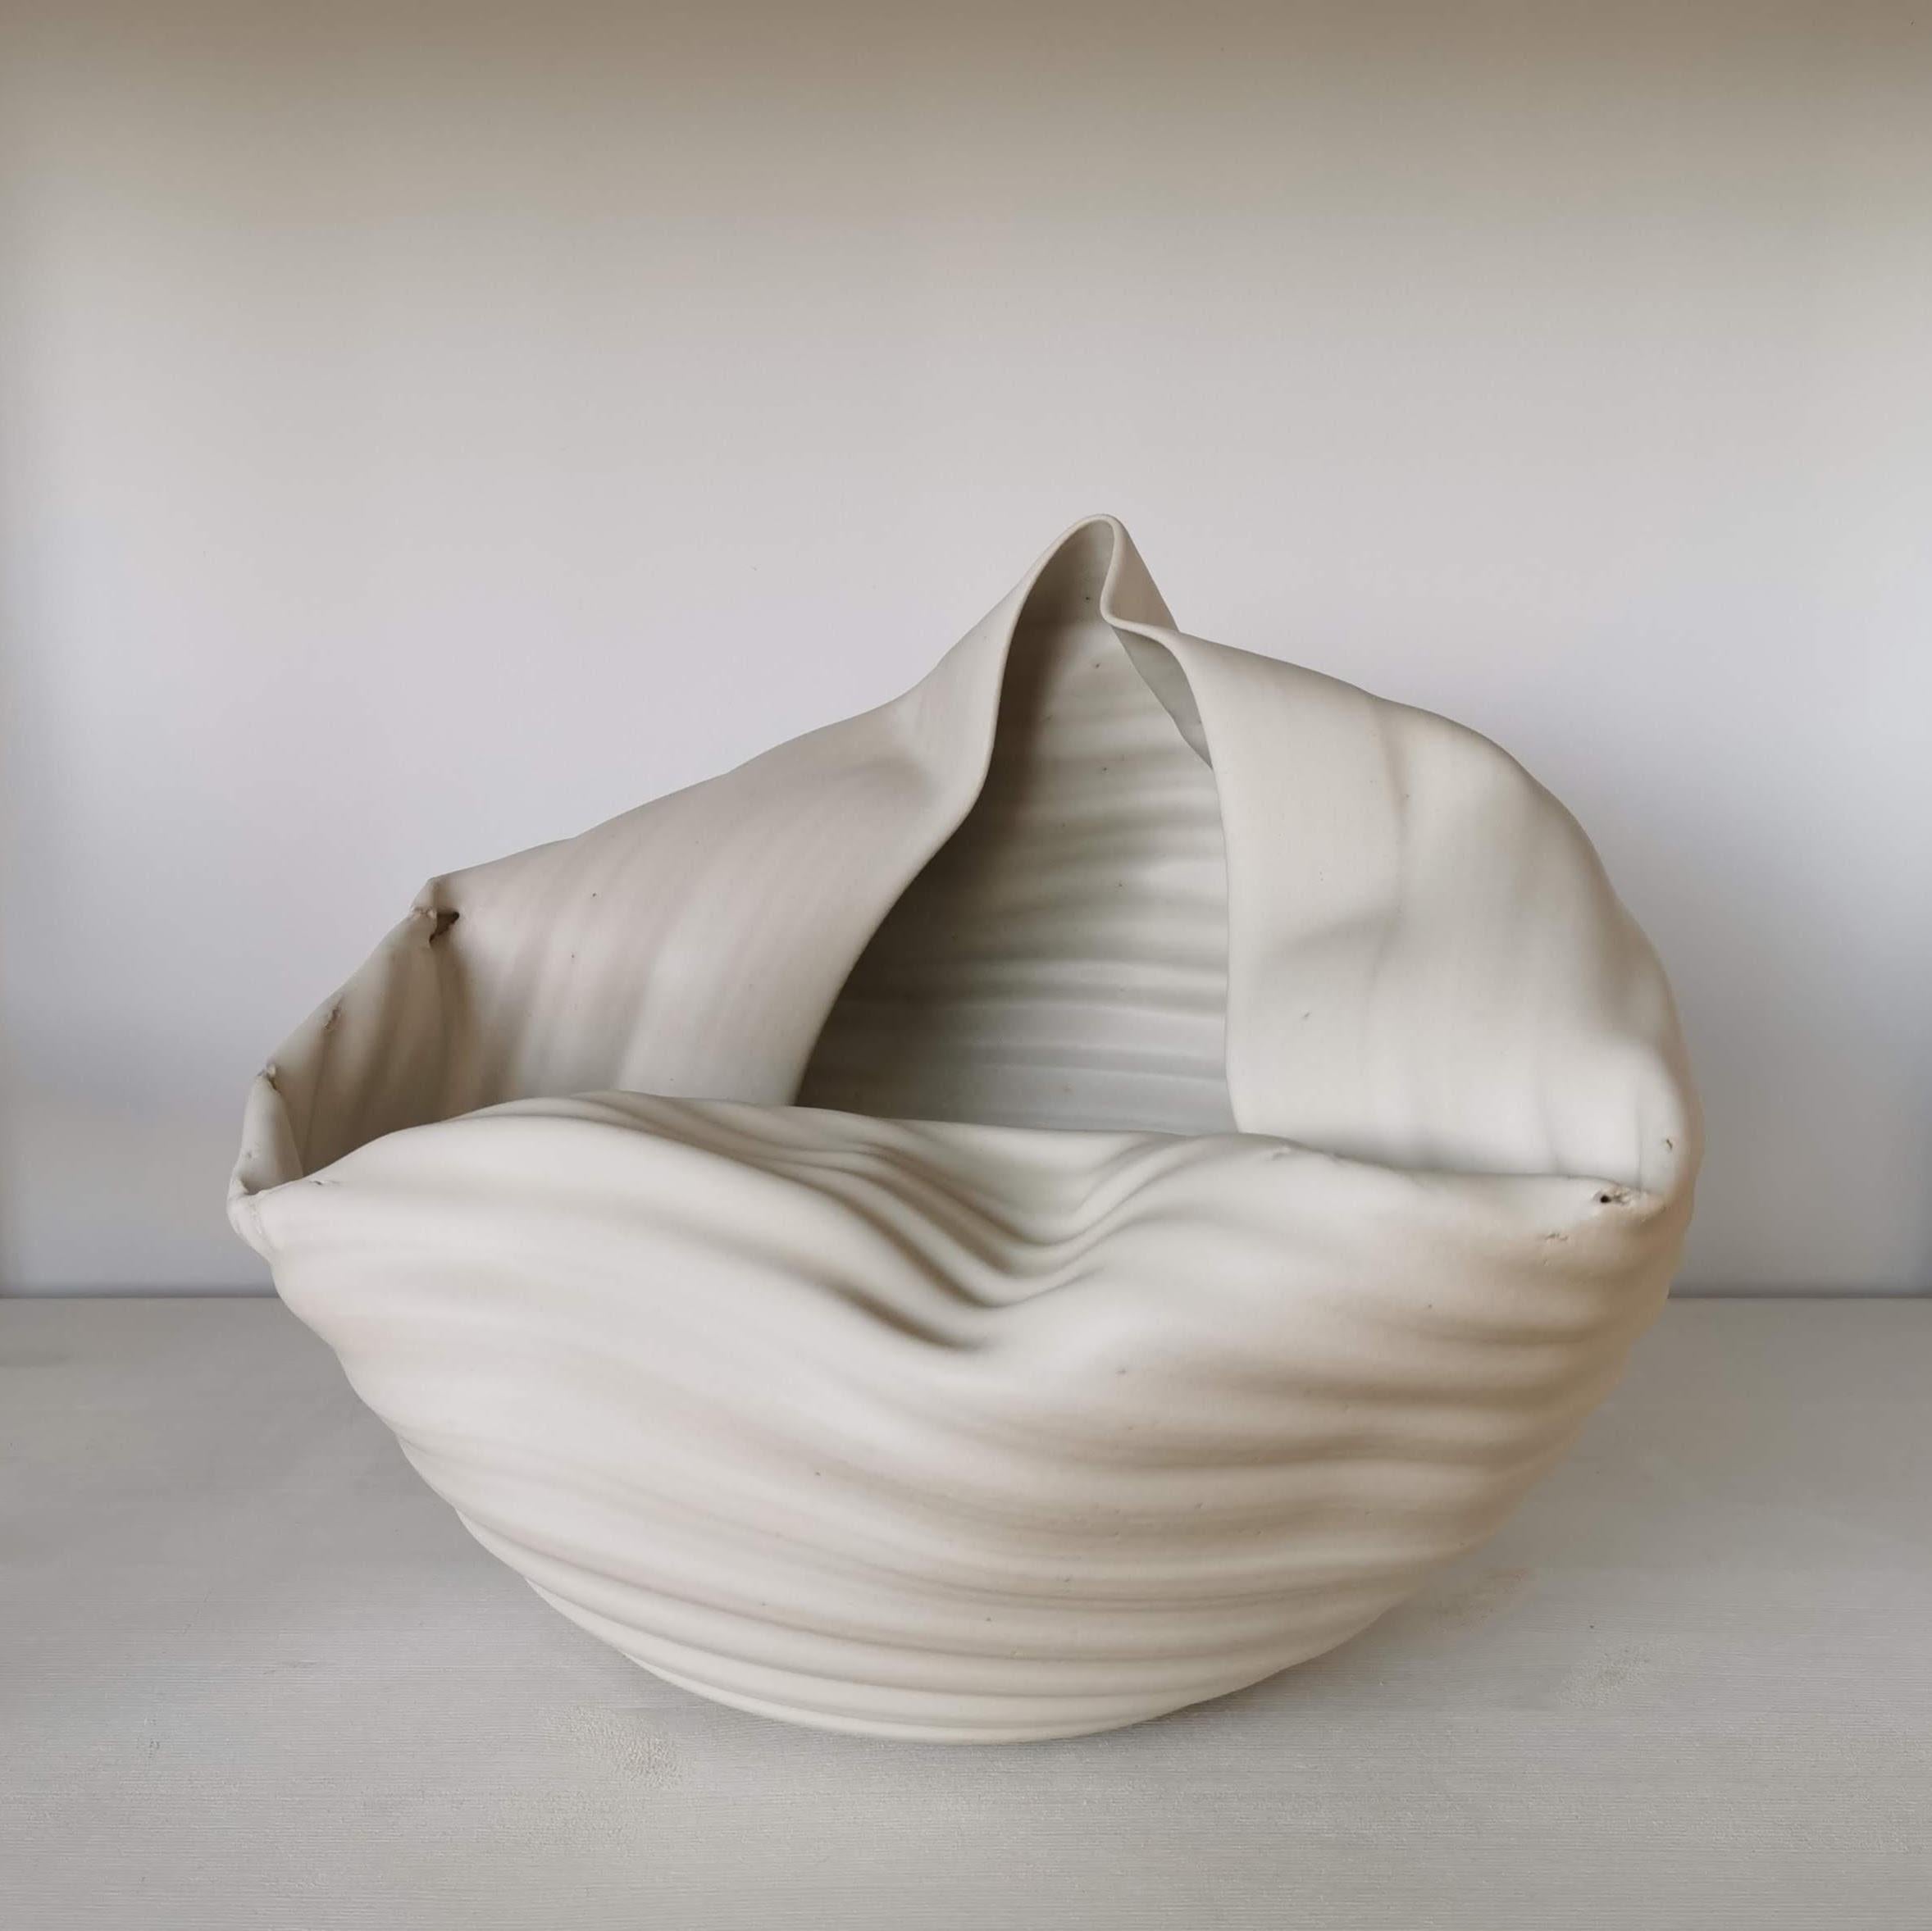 Ribbed White Open Form, Vase, Interior Sculpture or Vessel, Objet D'Art For Sale 2